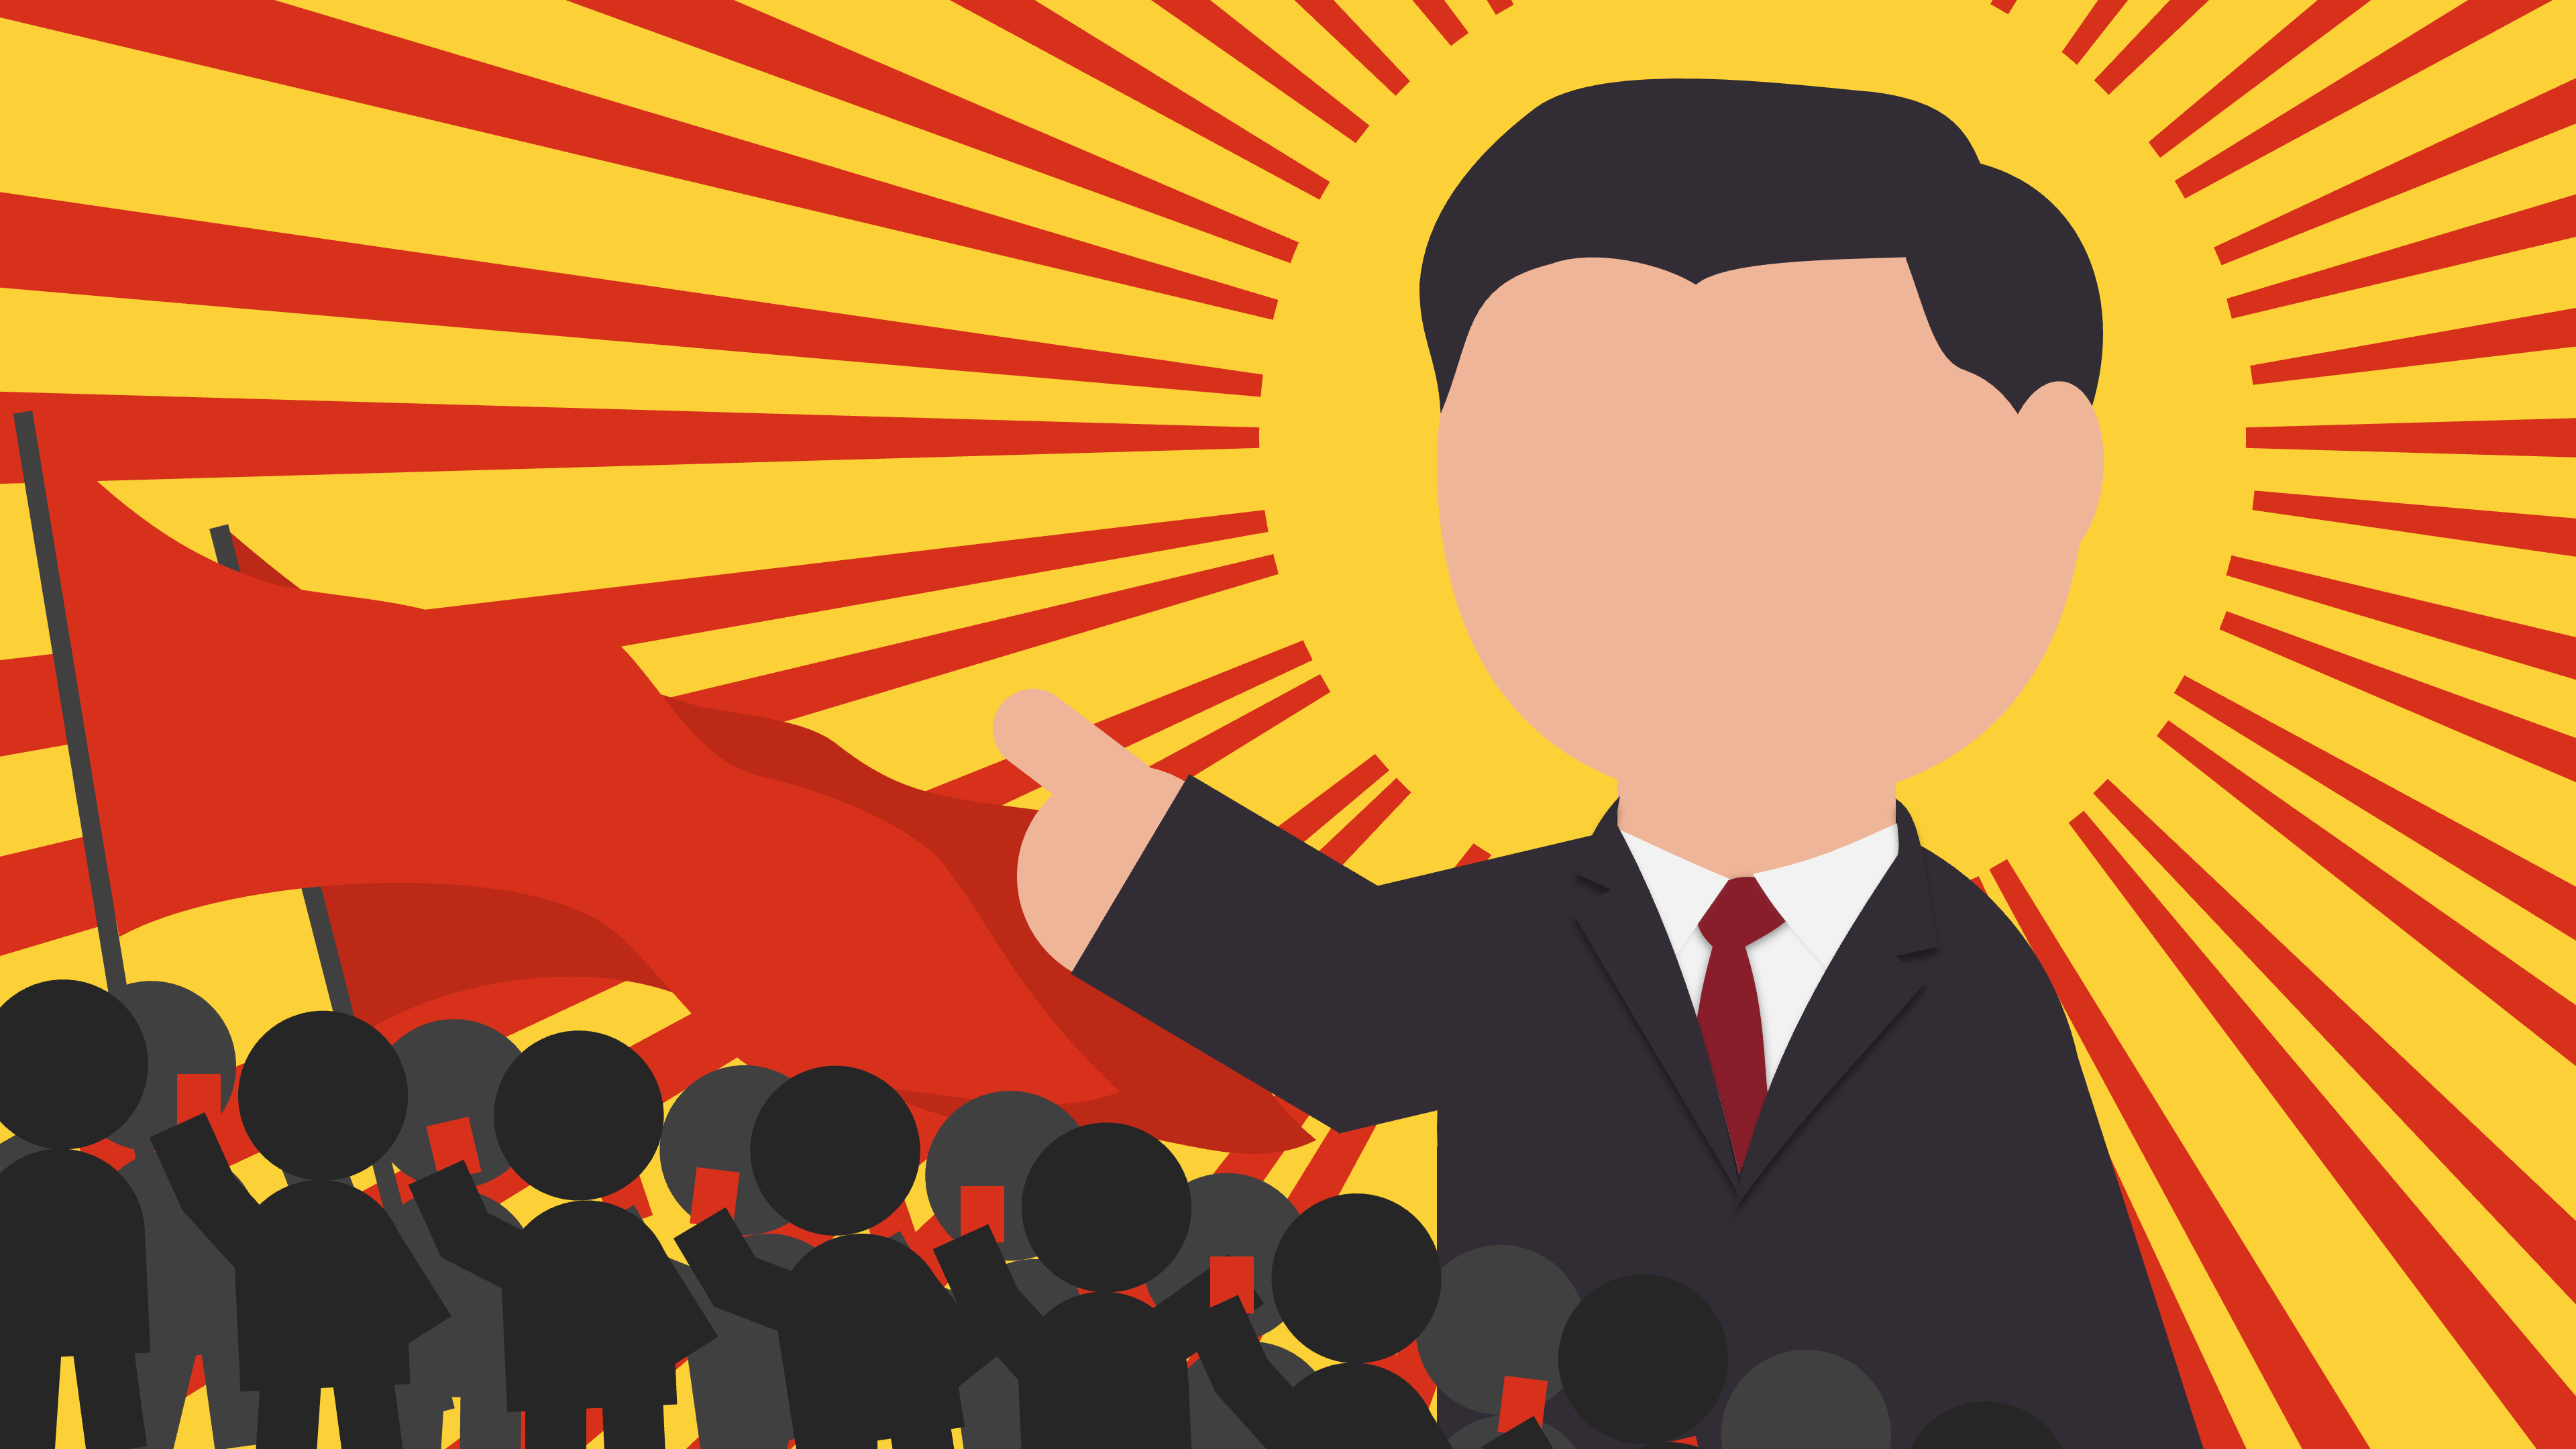 Communist-style Xi Jinping propaganda poster